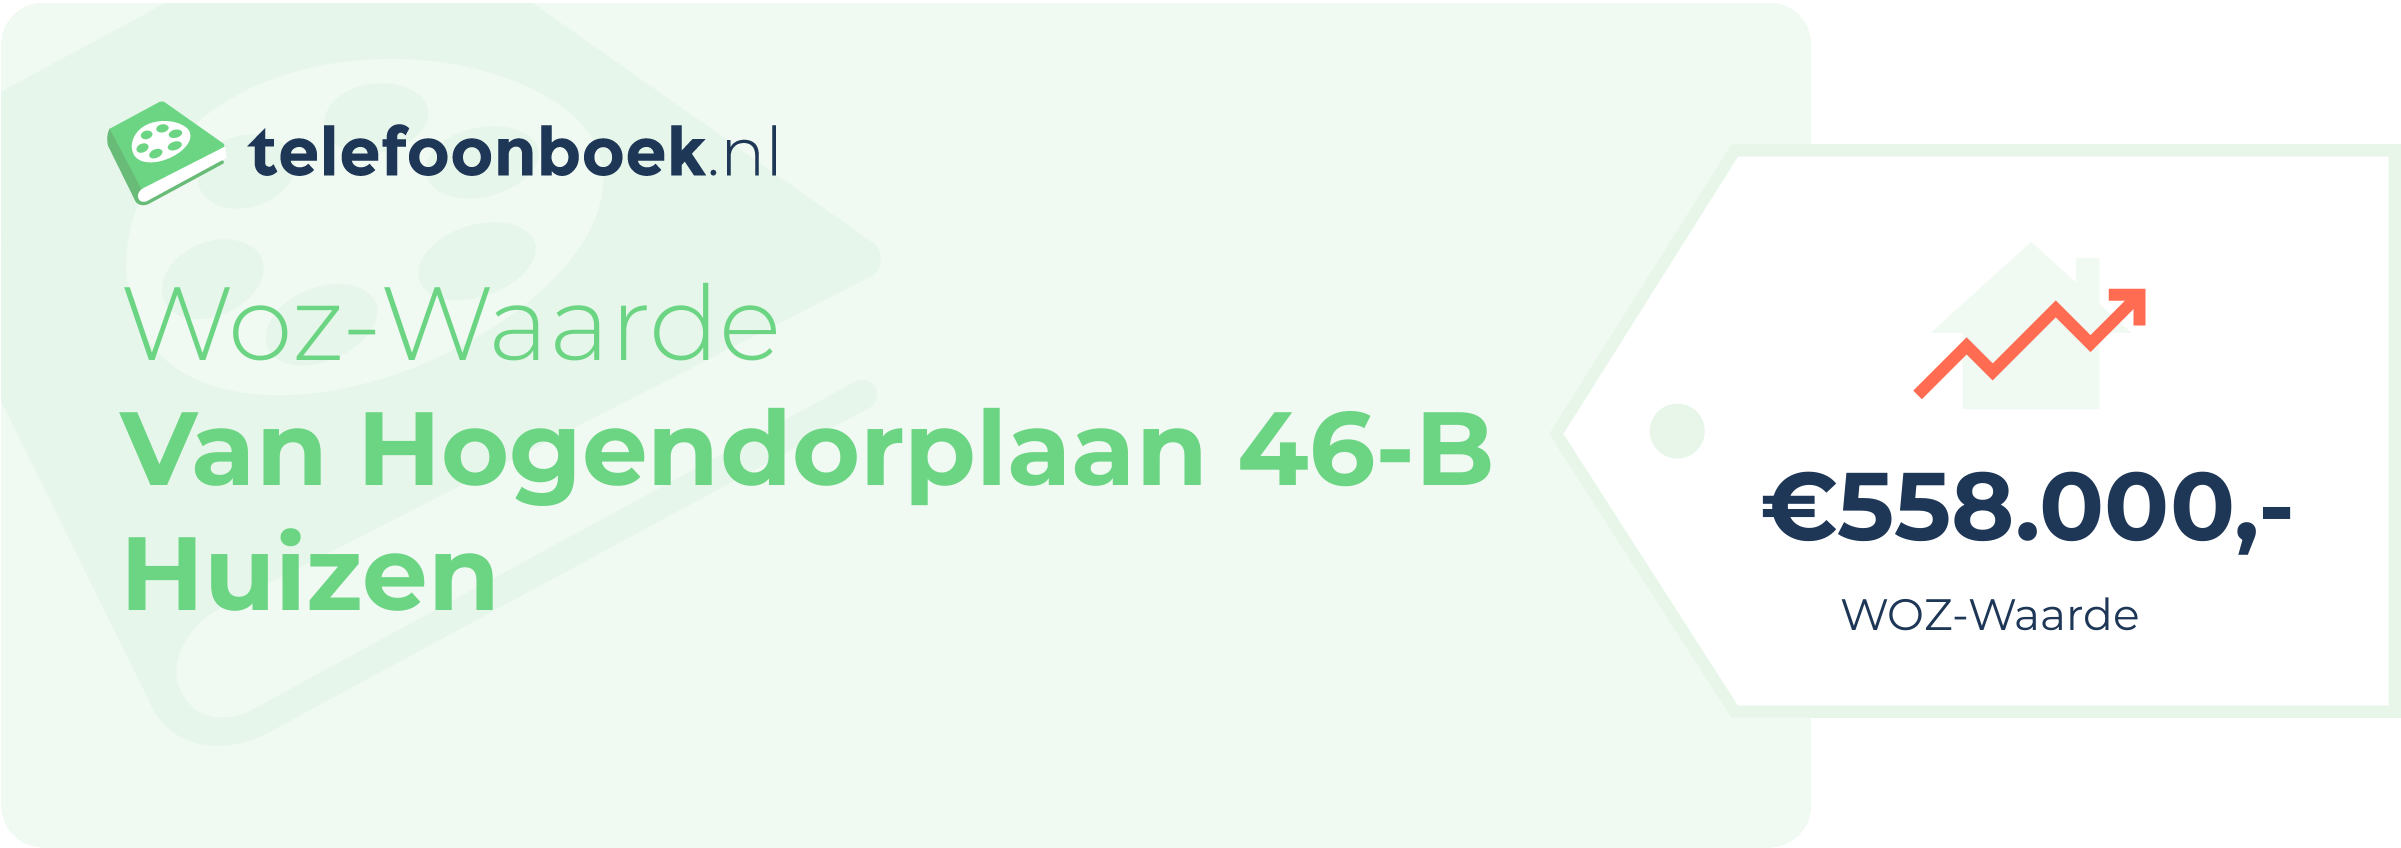 WOZ-waarde Van Hogendorplaan 46-B Huizen